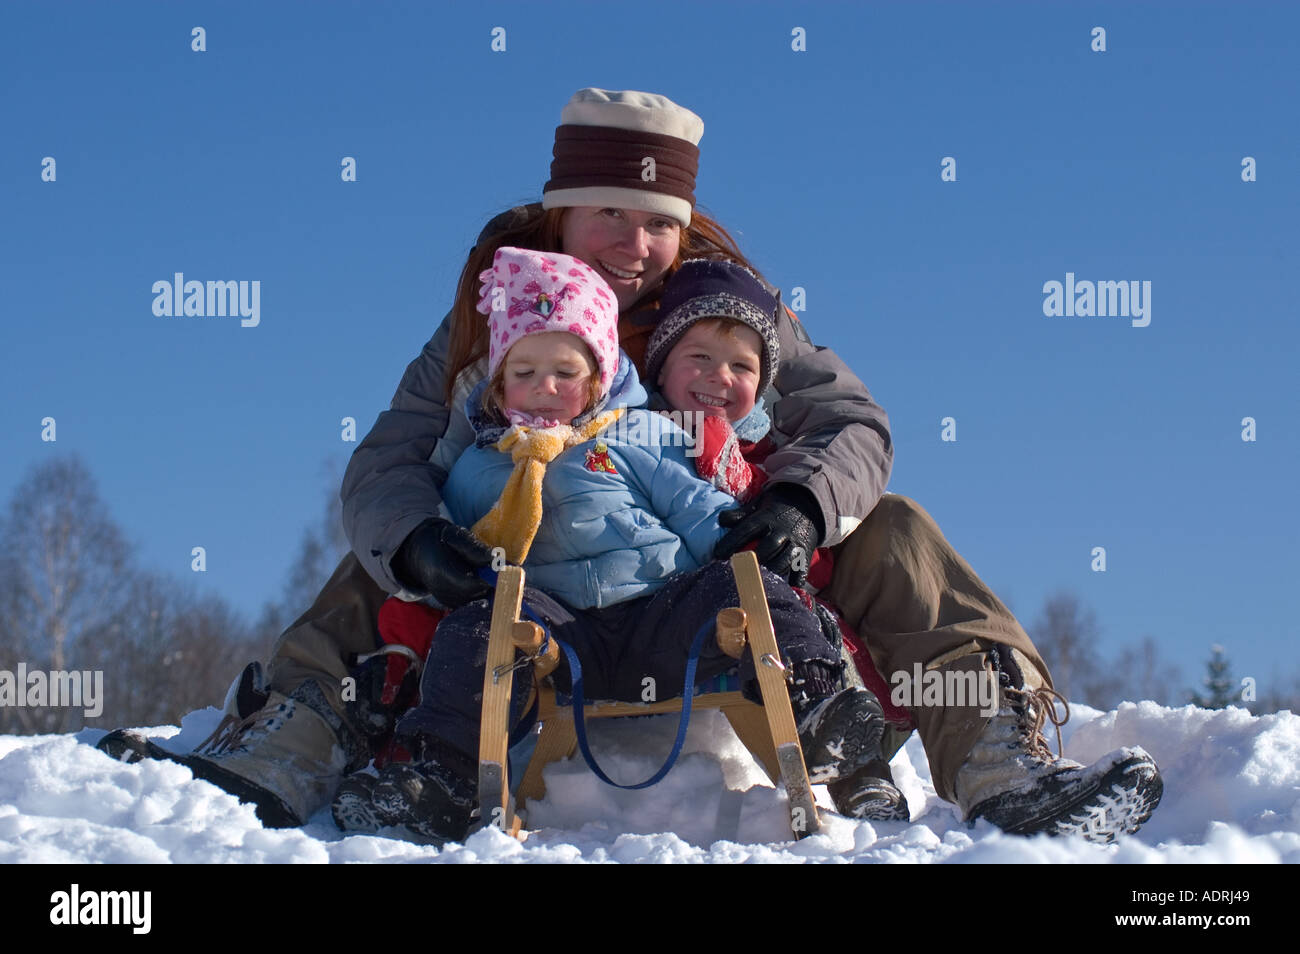 Signor familiy in inverno slittino slittino su una slitta Foto Stock